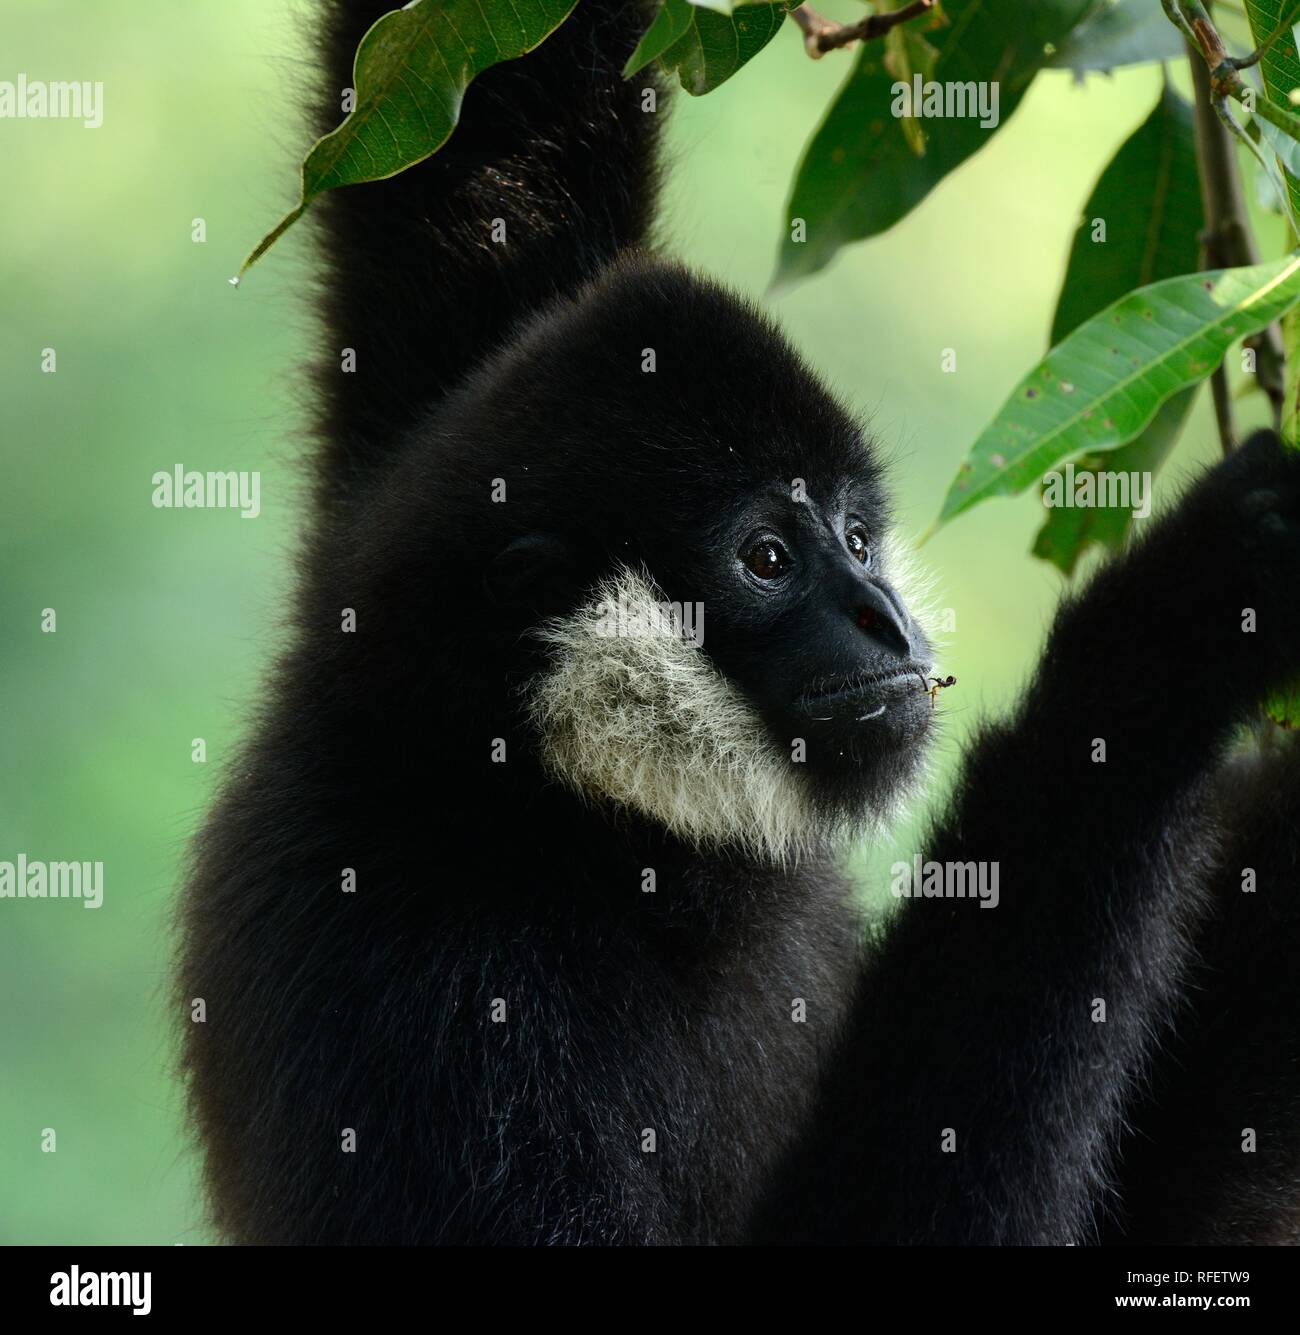 schöne weiße-cheeked Gibbon (Hylobates Concolor) auf Ast Stockfoto